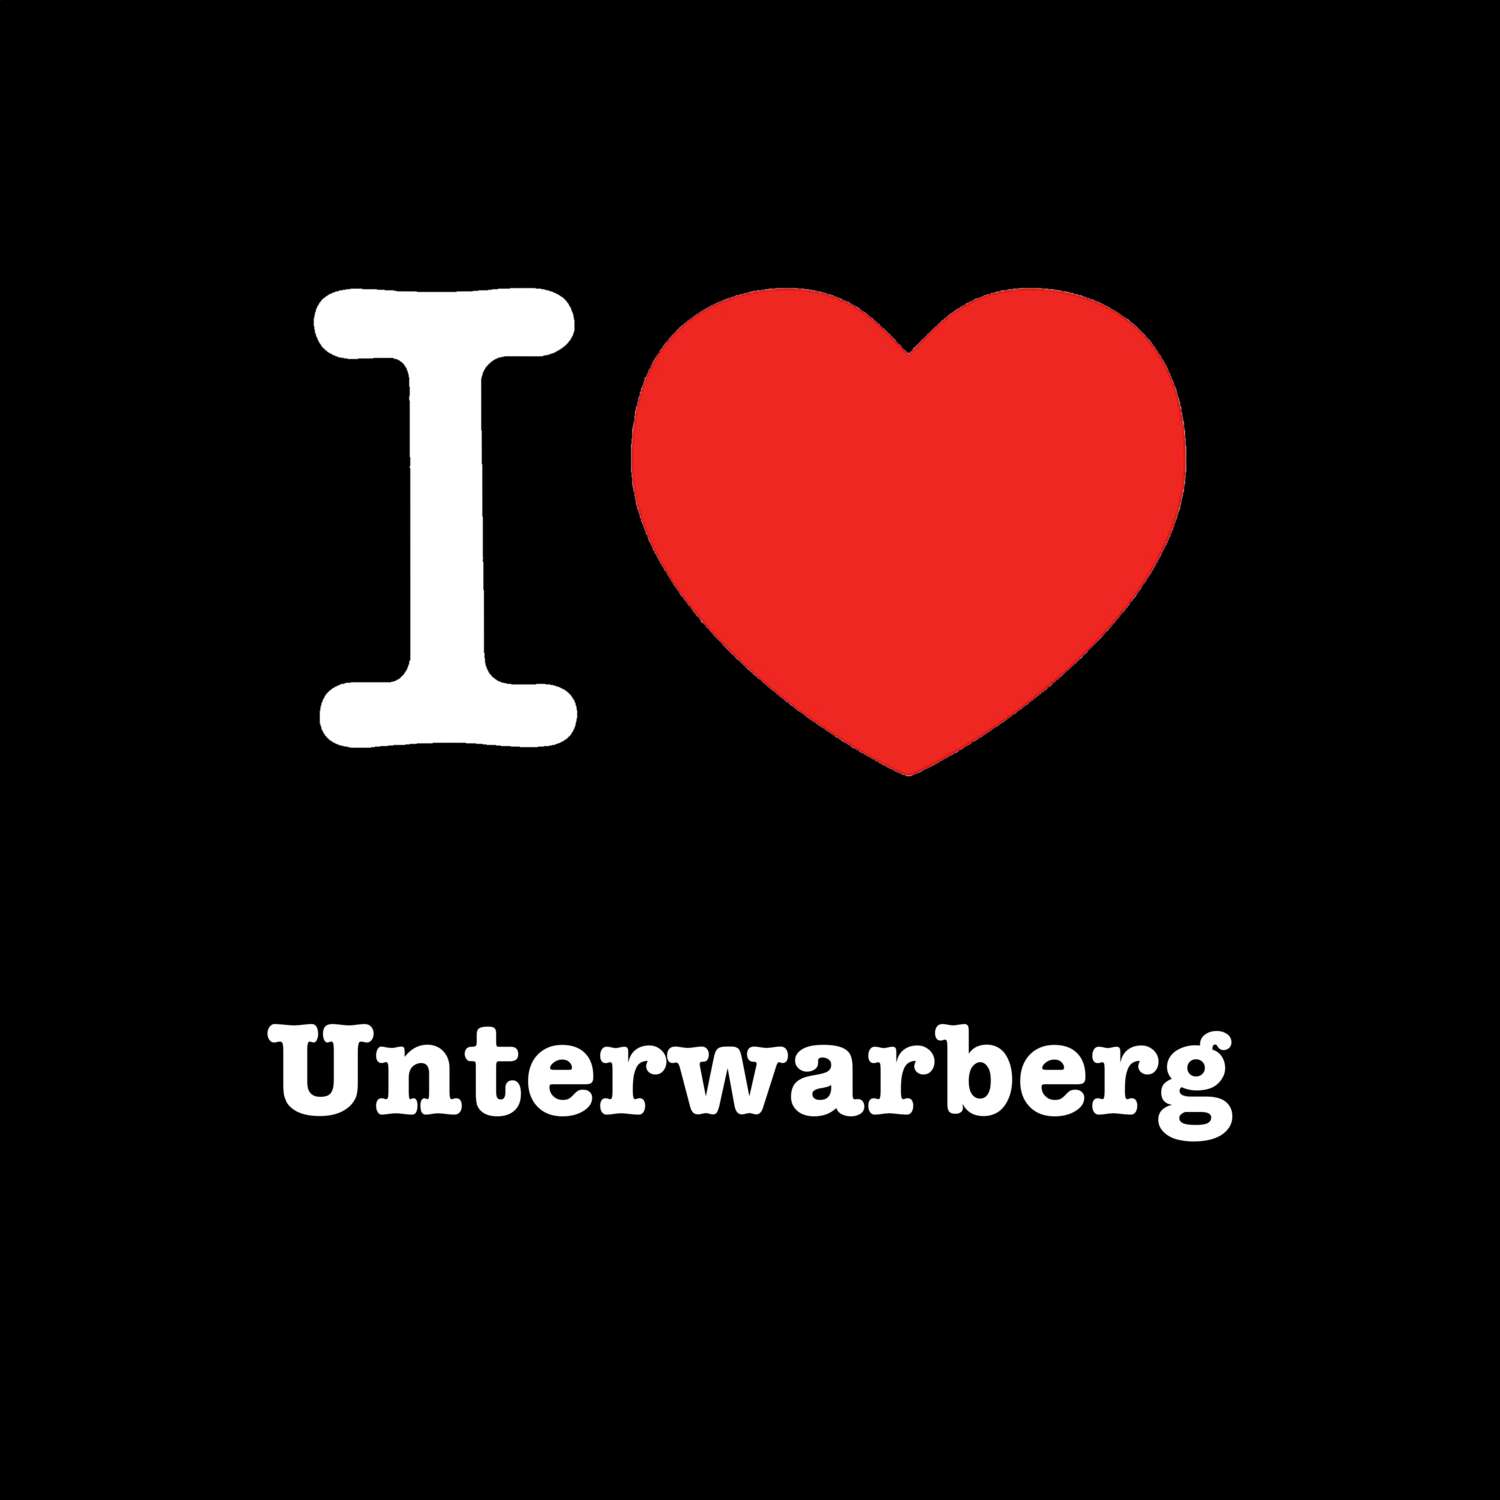 Unterwarberg T-Shirt »I love«